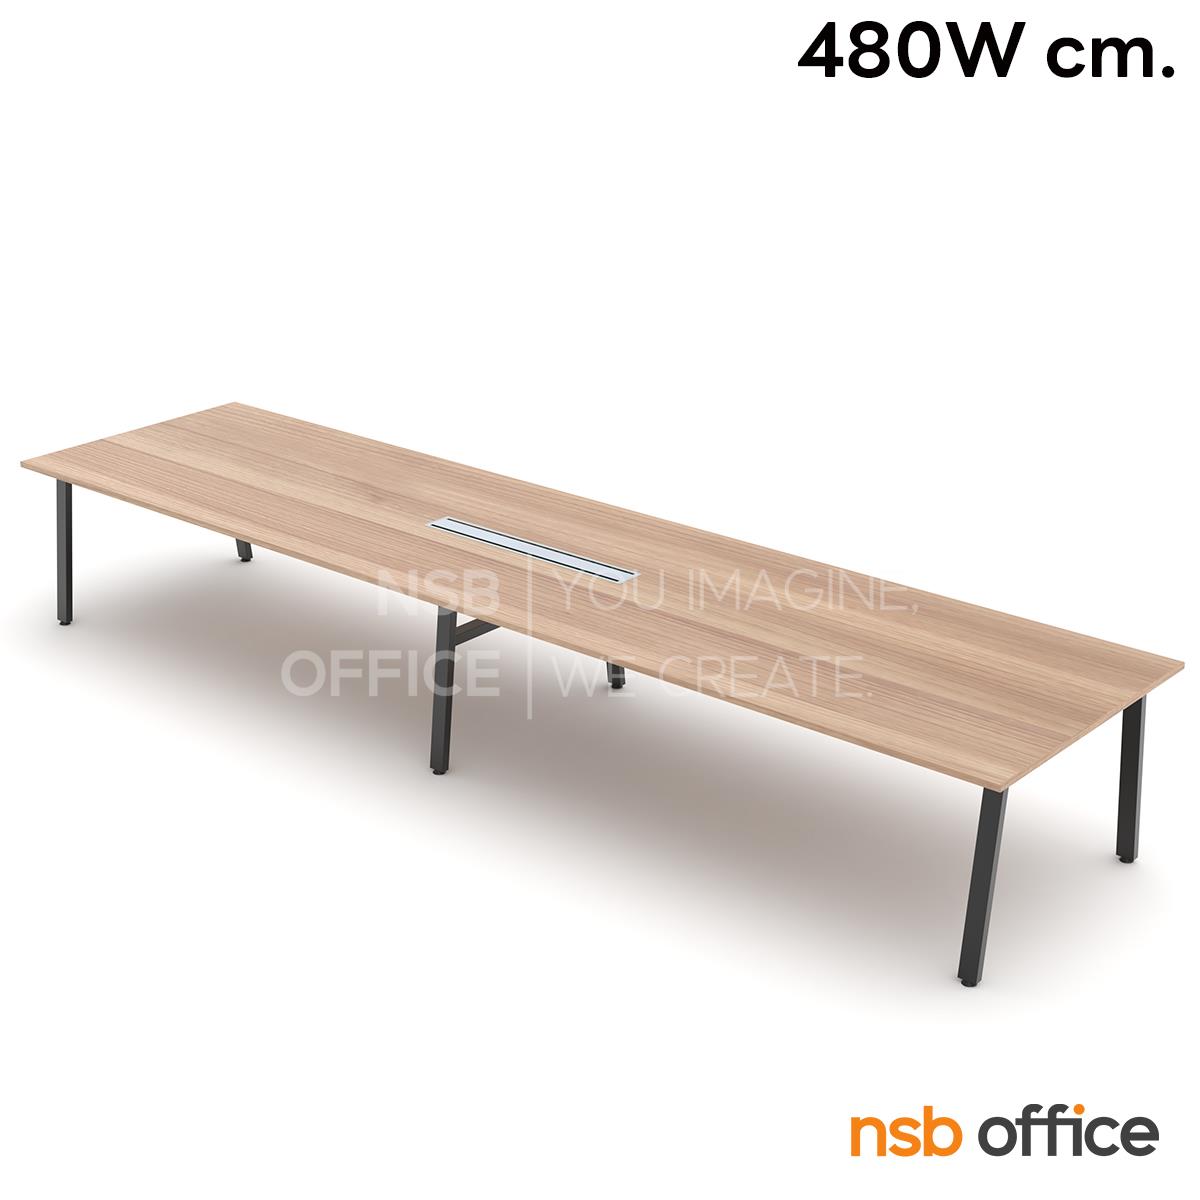 โต๊ะประชุมสี่เหลี่ยม รุ่น Scott (สก็อตต์) ขนาด 300W, 360W, 420W, 480W cm. ขาเหล็ก